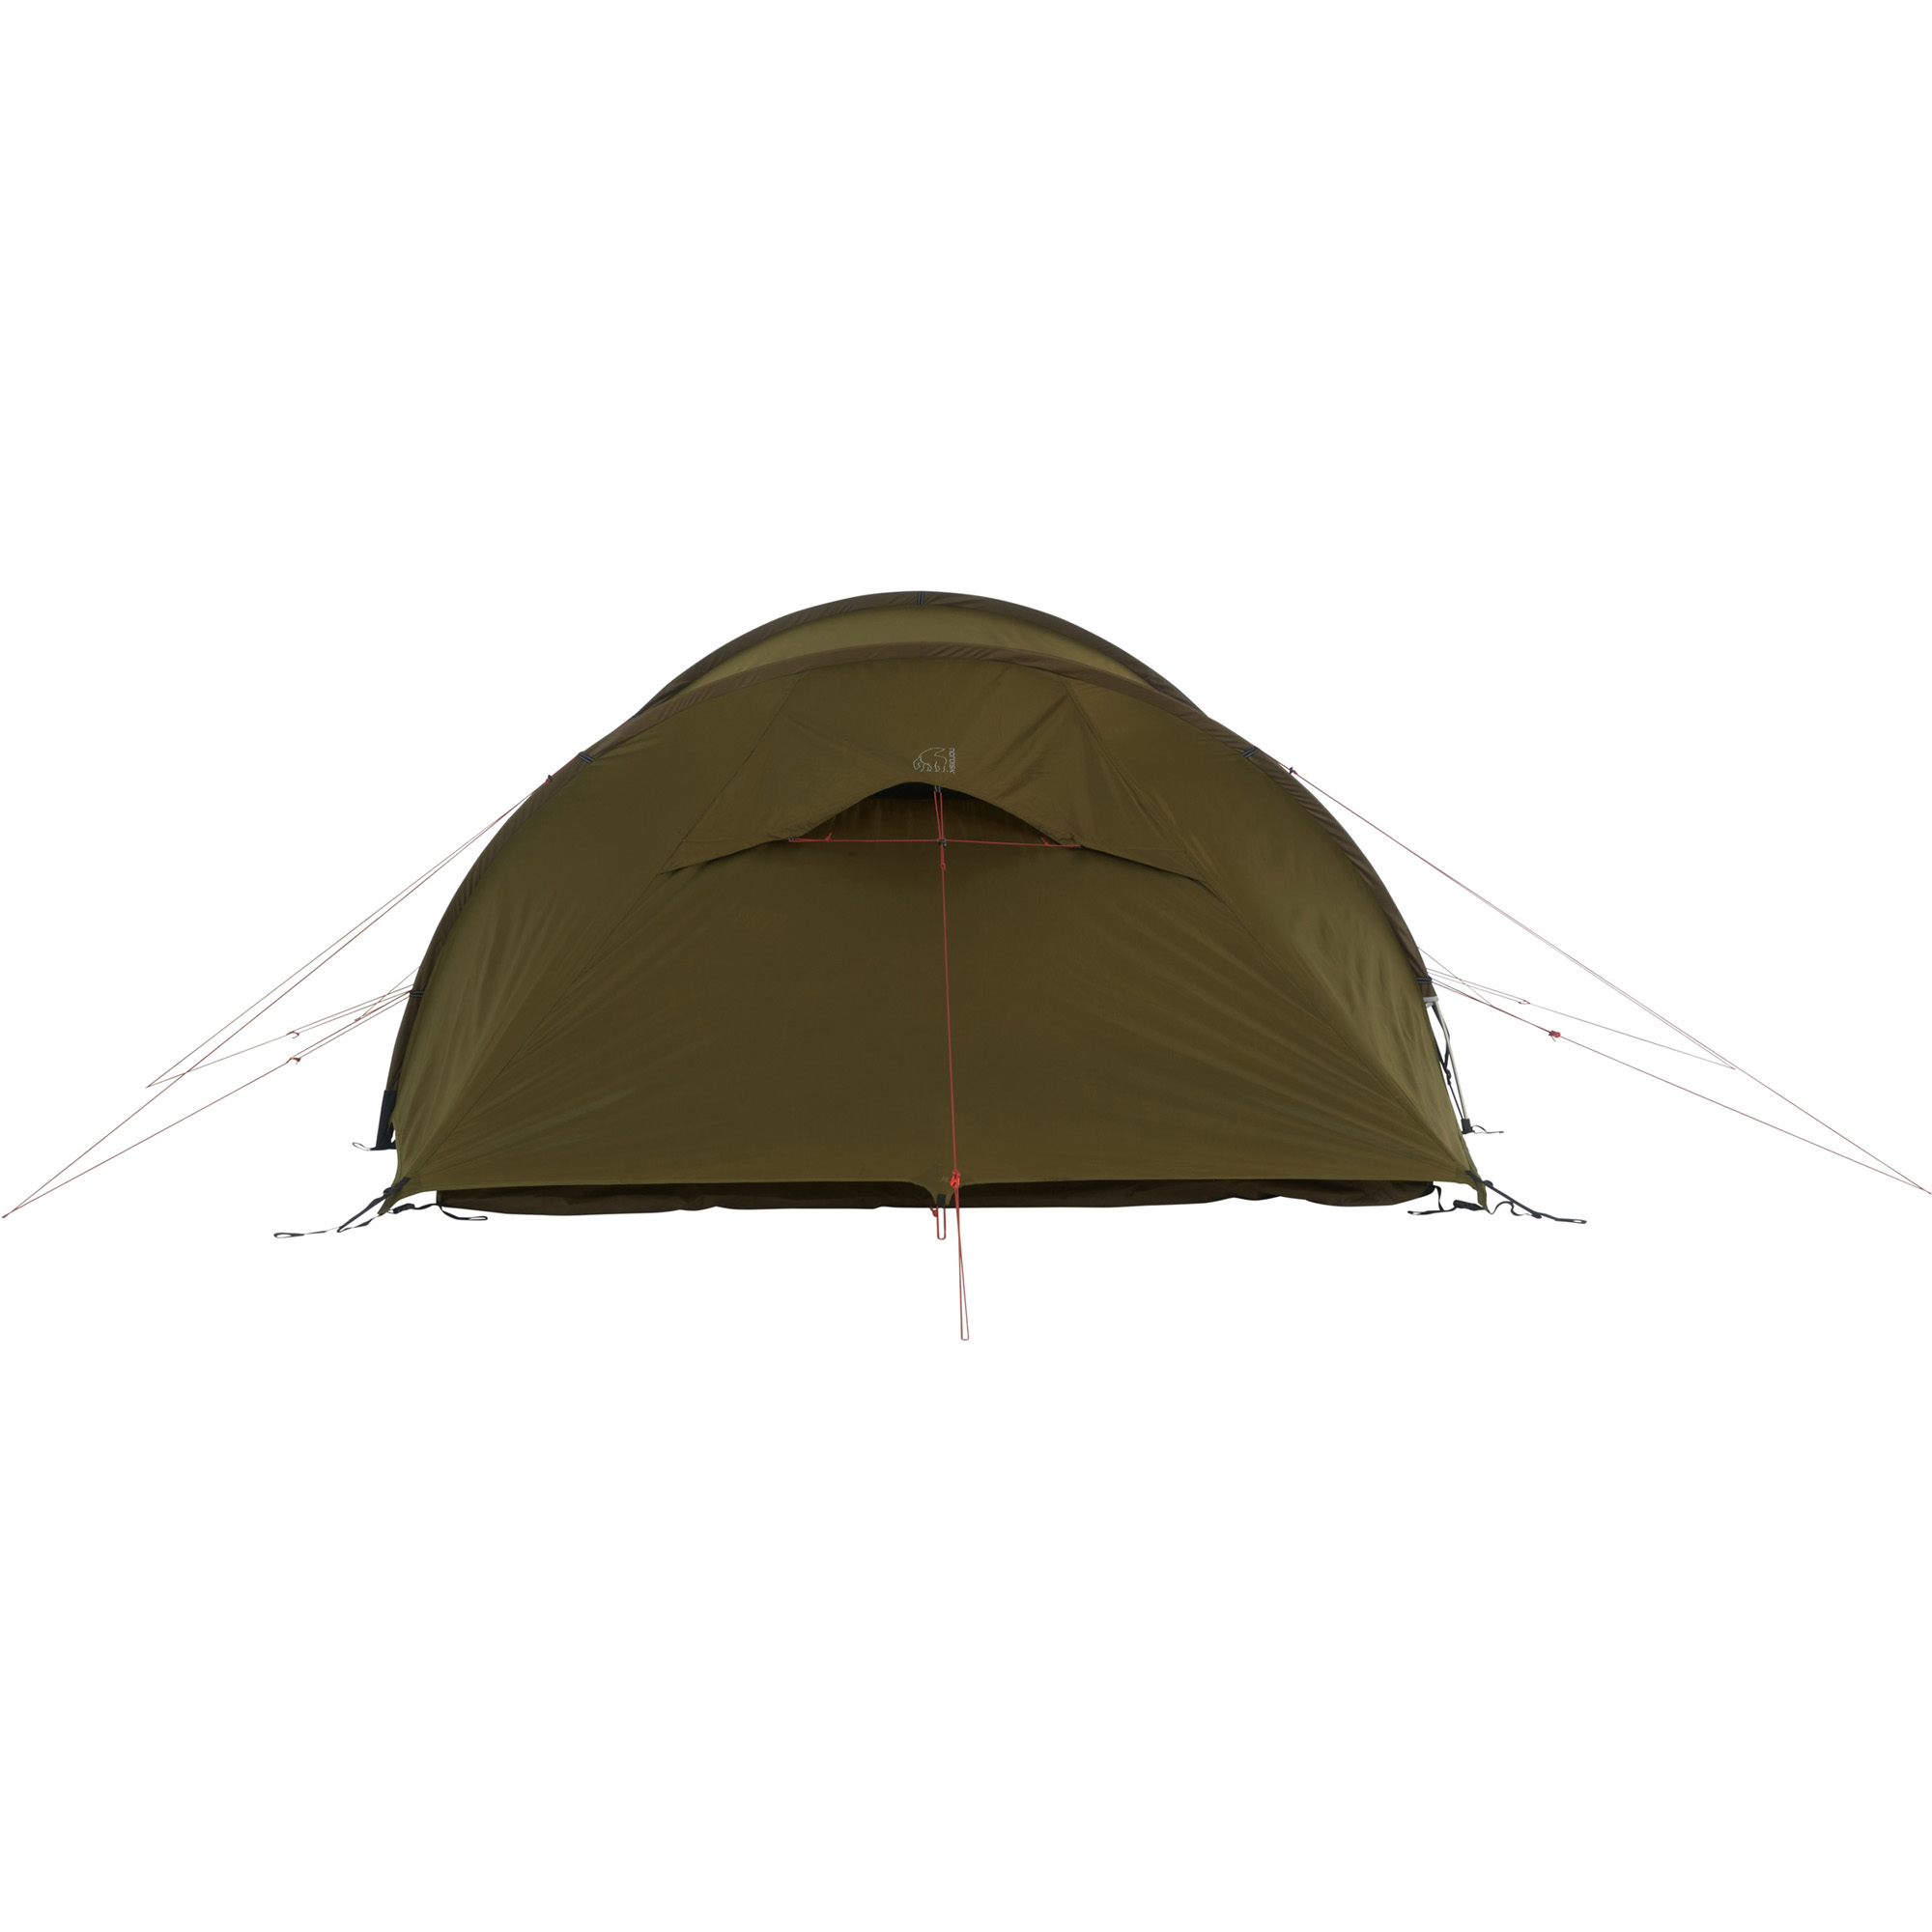 Nordisk Oppland 4 PU Lightweight Trekking Tent